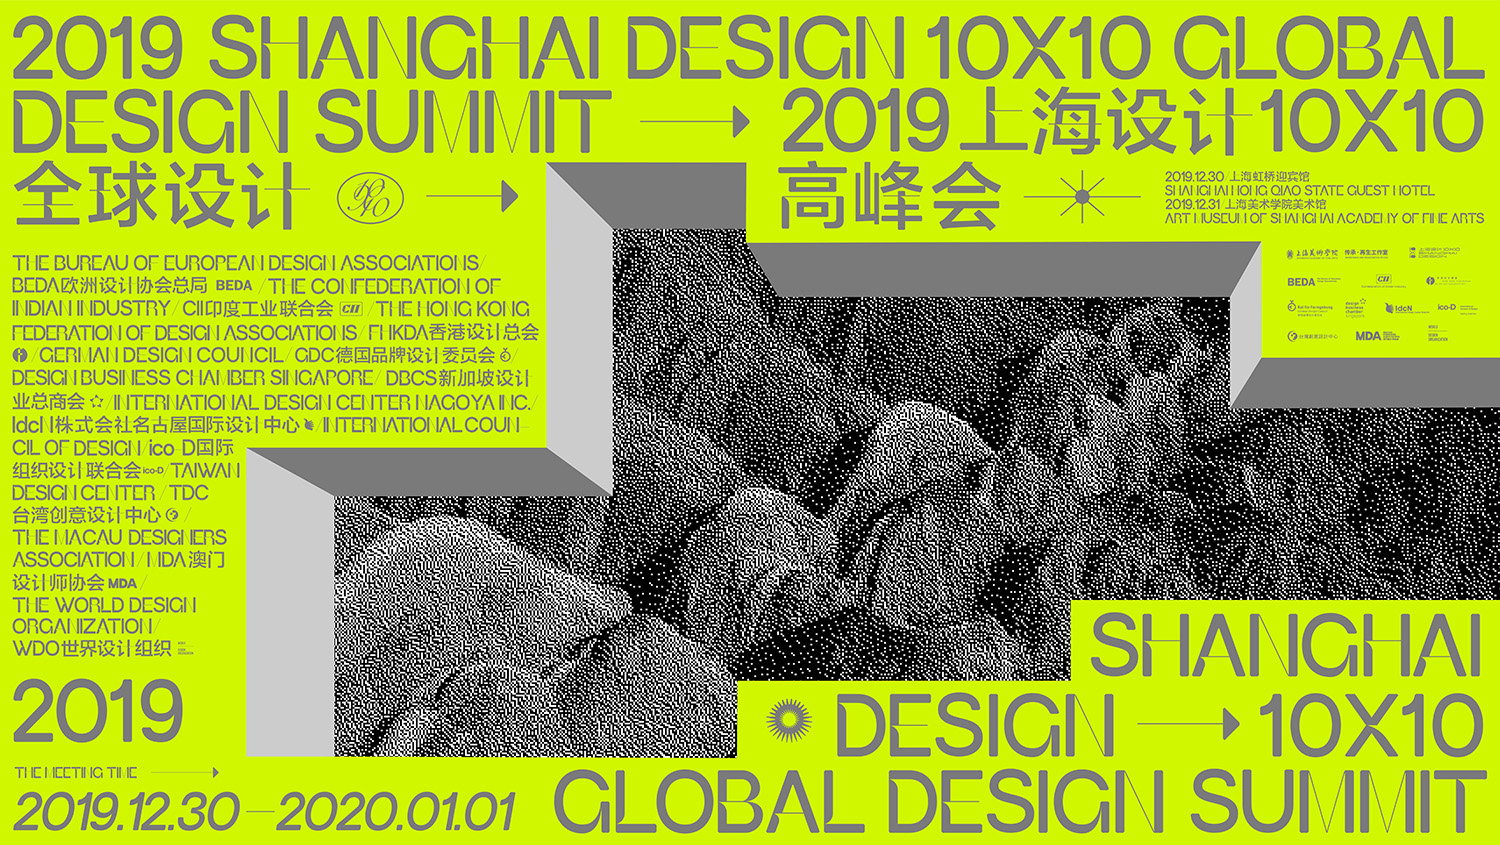 上海设计10×10 全球设计高峰会  前期宣传